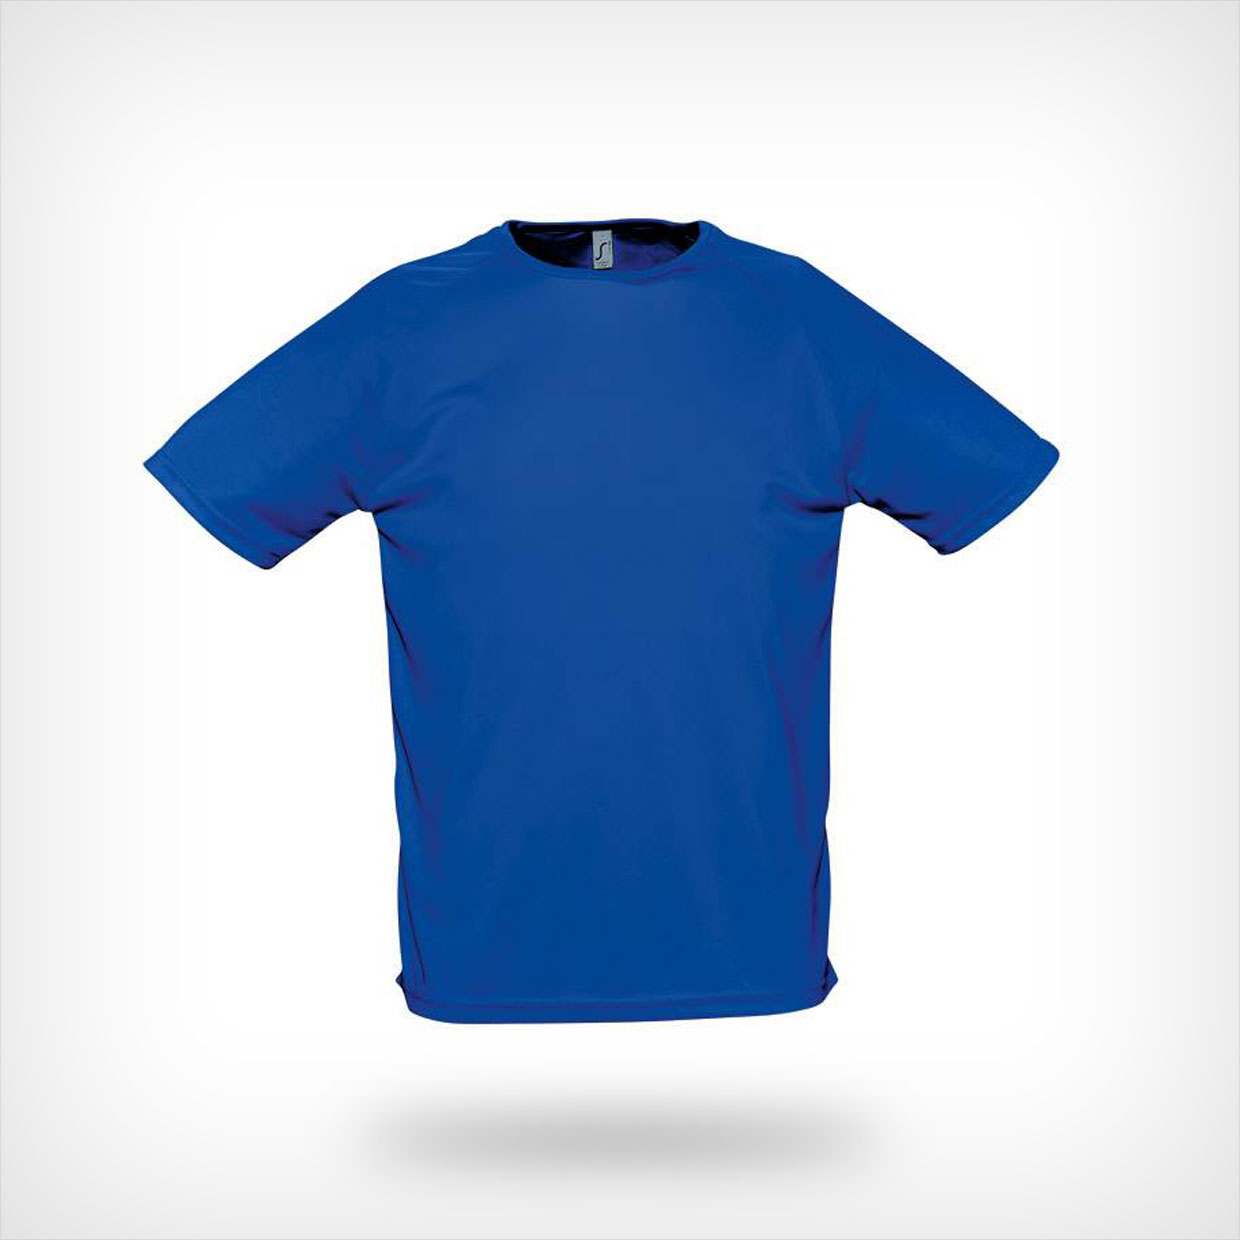 Weinig groot springen Sols Sporty heren t-shirt, 11939 - LOOPSHIRT.NL - Uw specialist in bedrukte  loopkleding!